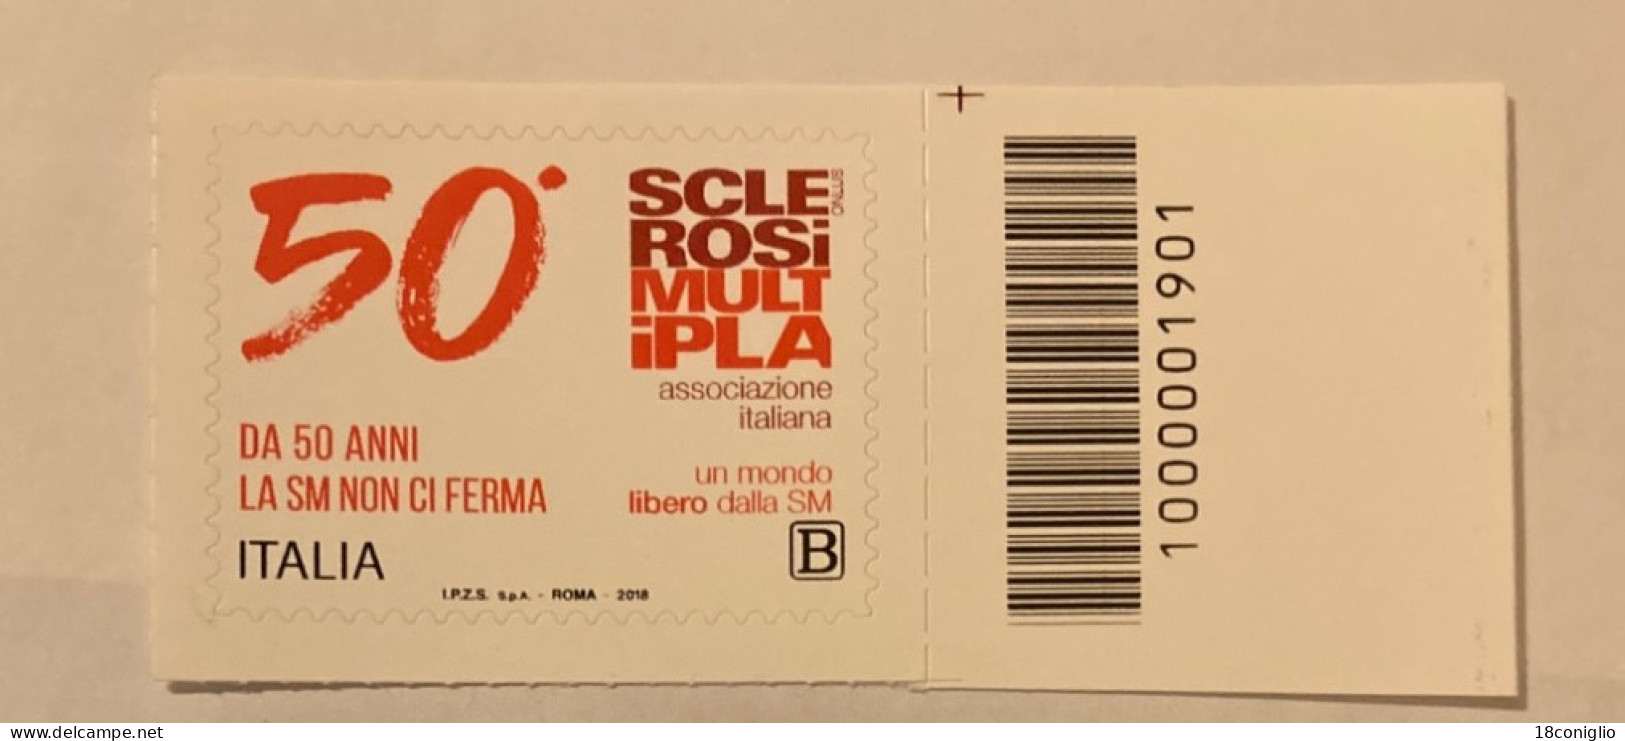 Italia 2018 Codice A Barre 1901 Sclerosi Multipla - Codici A Barre